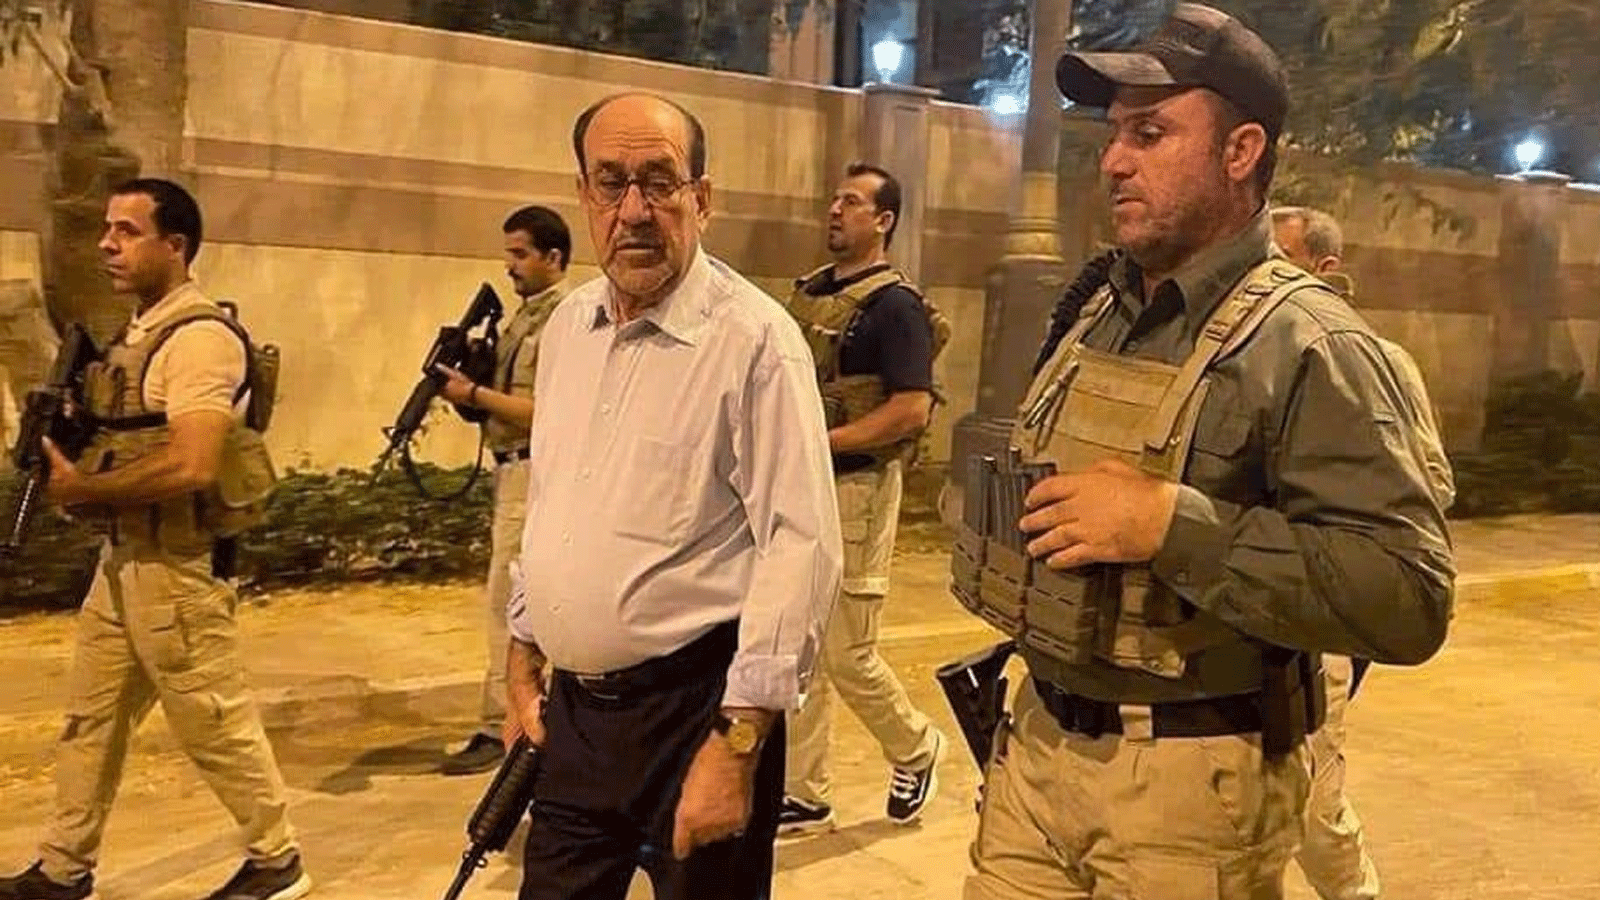 المالكي حاملاً سلاحه يحيط به حراسه لدى اقتحام أنصار الصدر للمنطقة الخضراء وسط بغداد في 27 يوليو\تموز 2022 (تويتر)